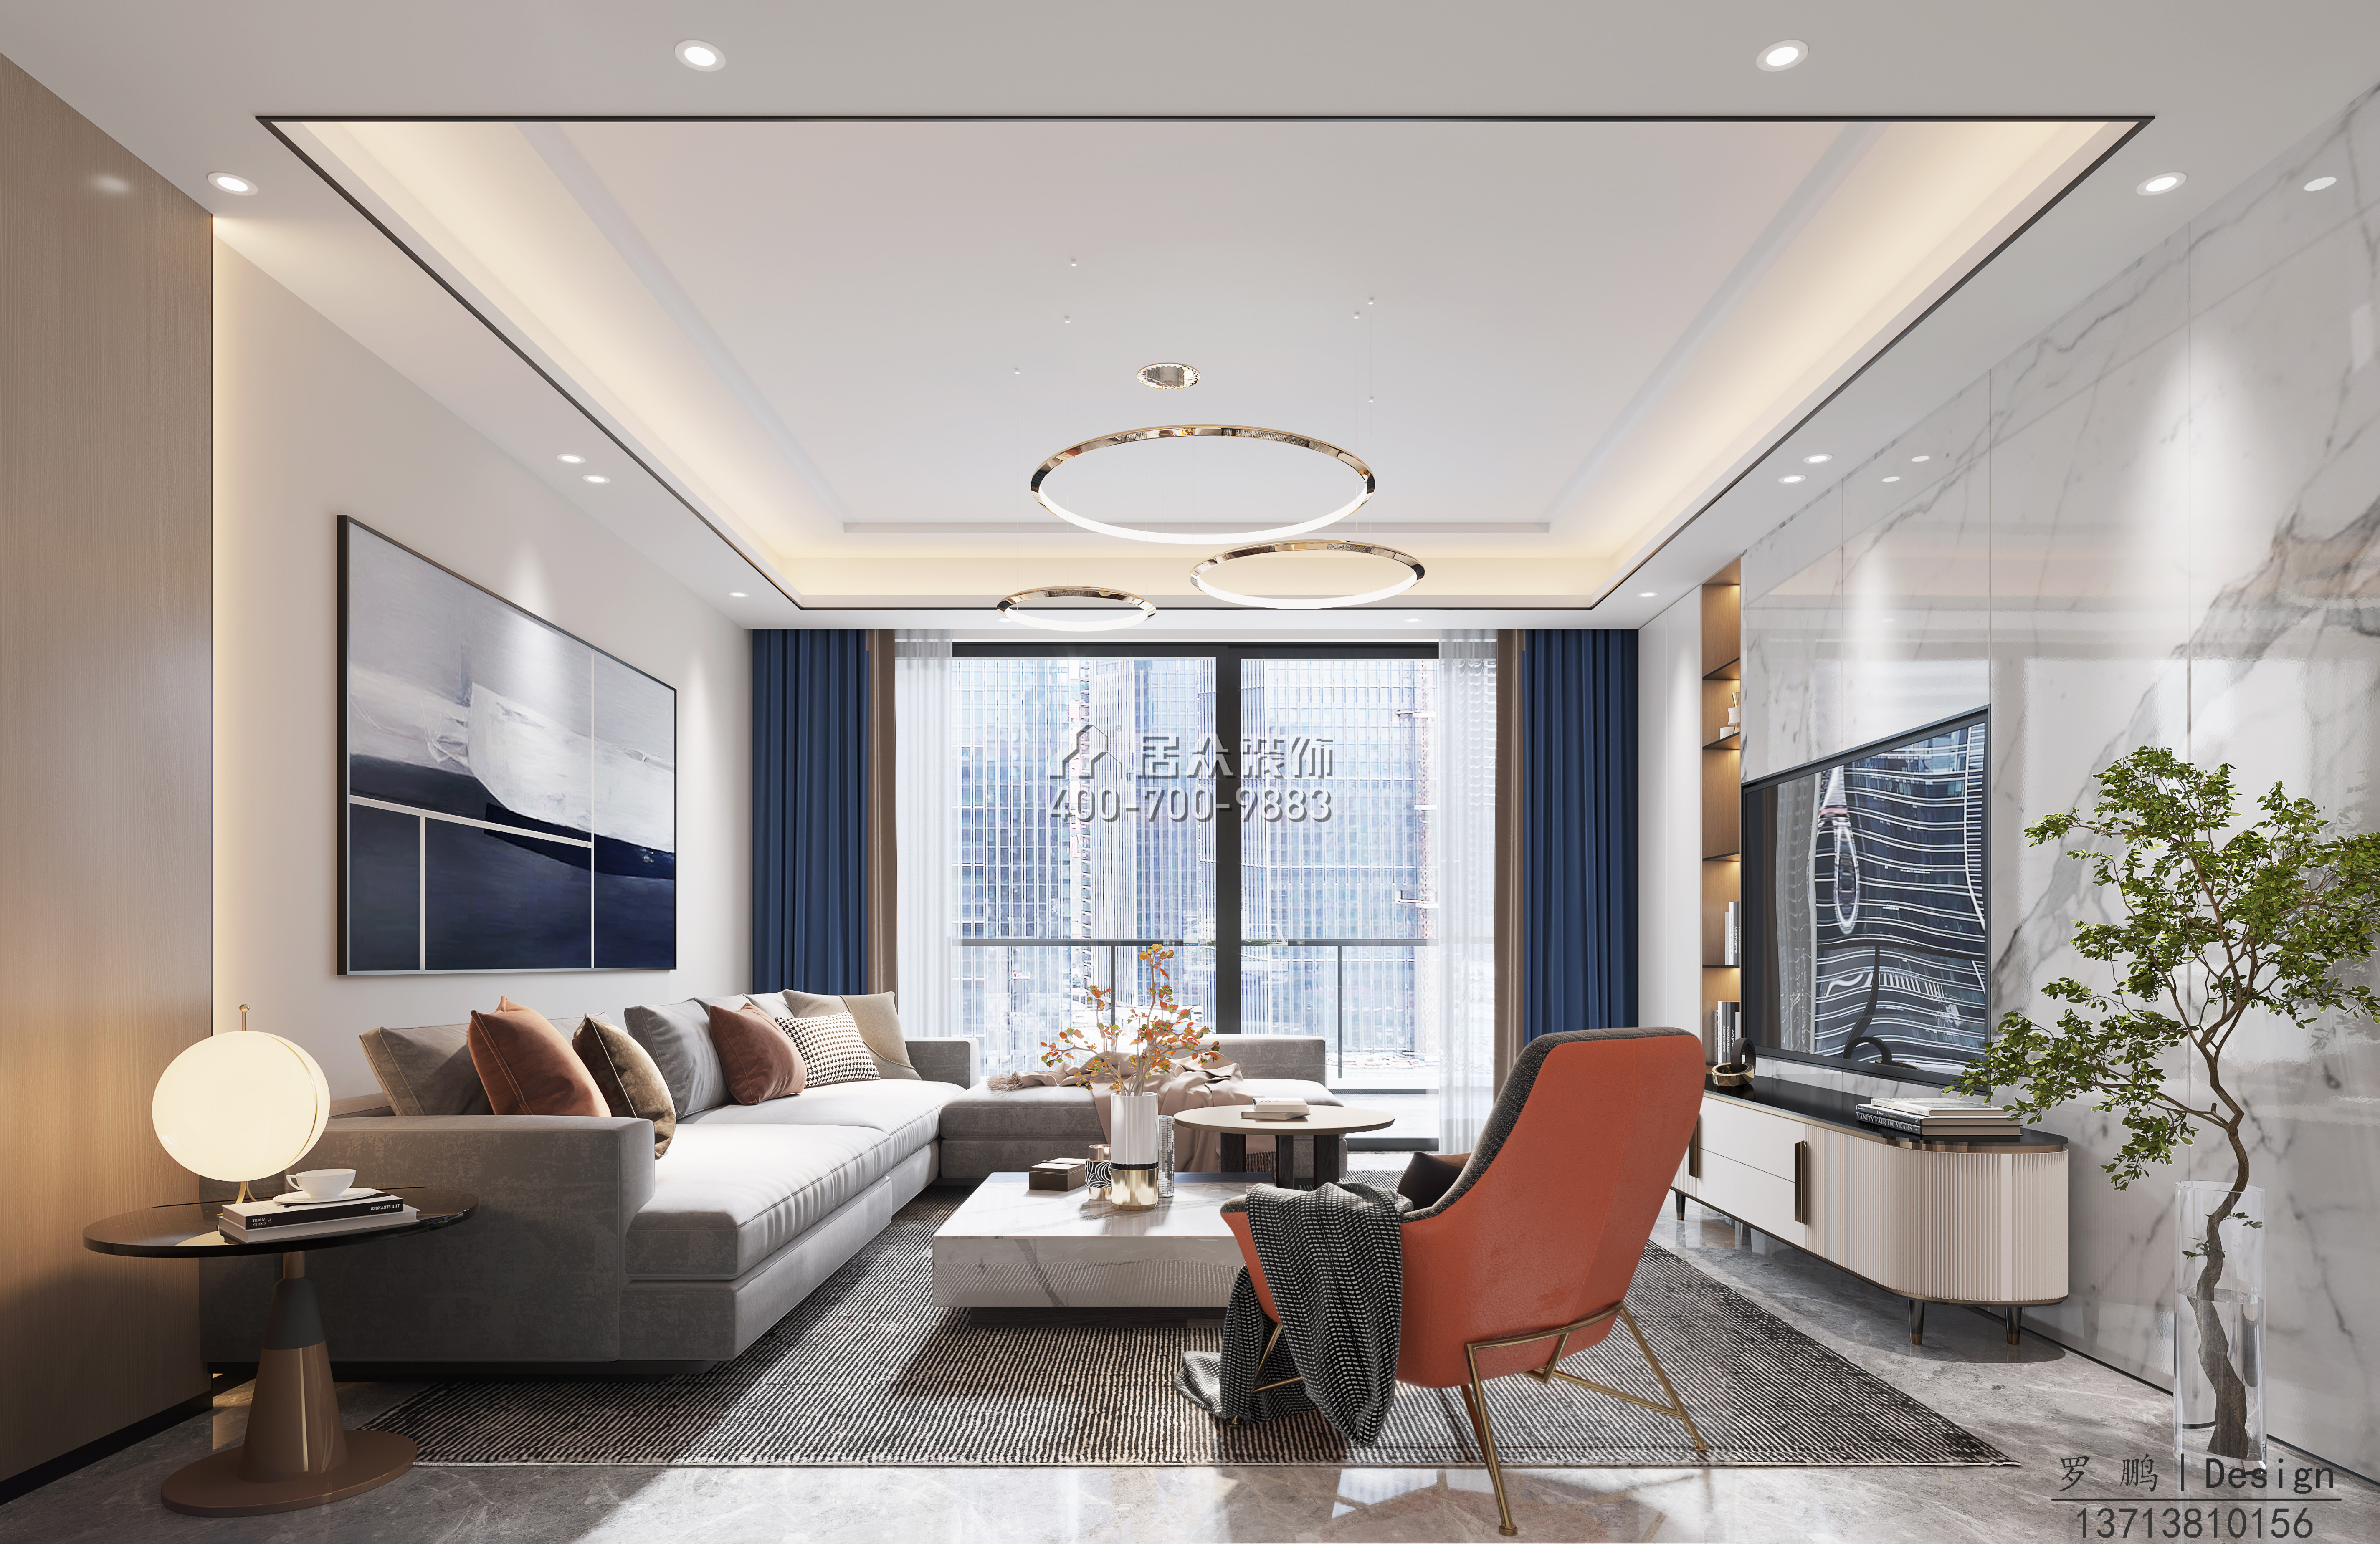 鼎太風華160平方米現代簡約風格平層戶型客廳裝修效果圖